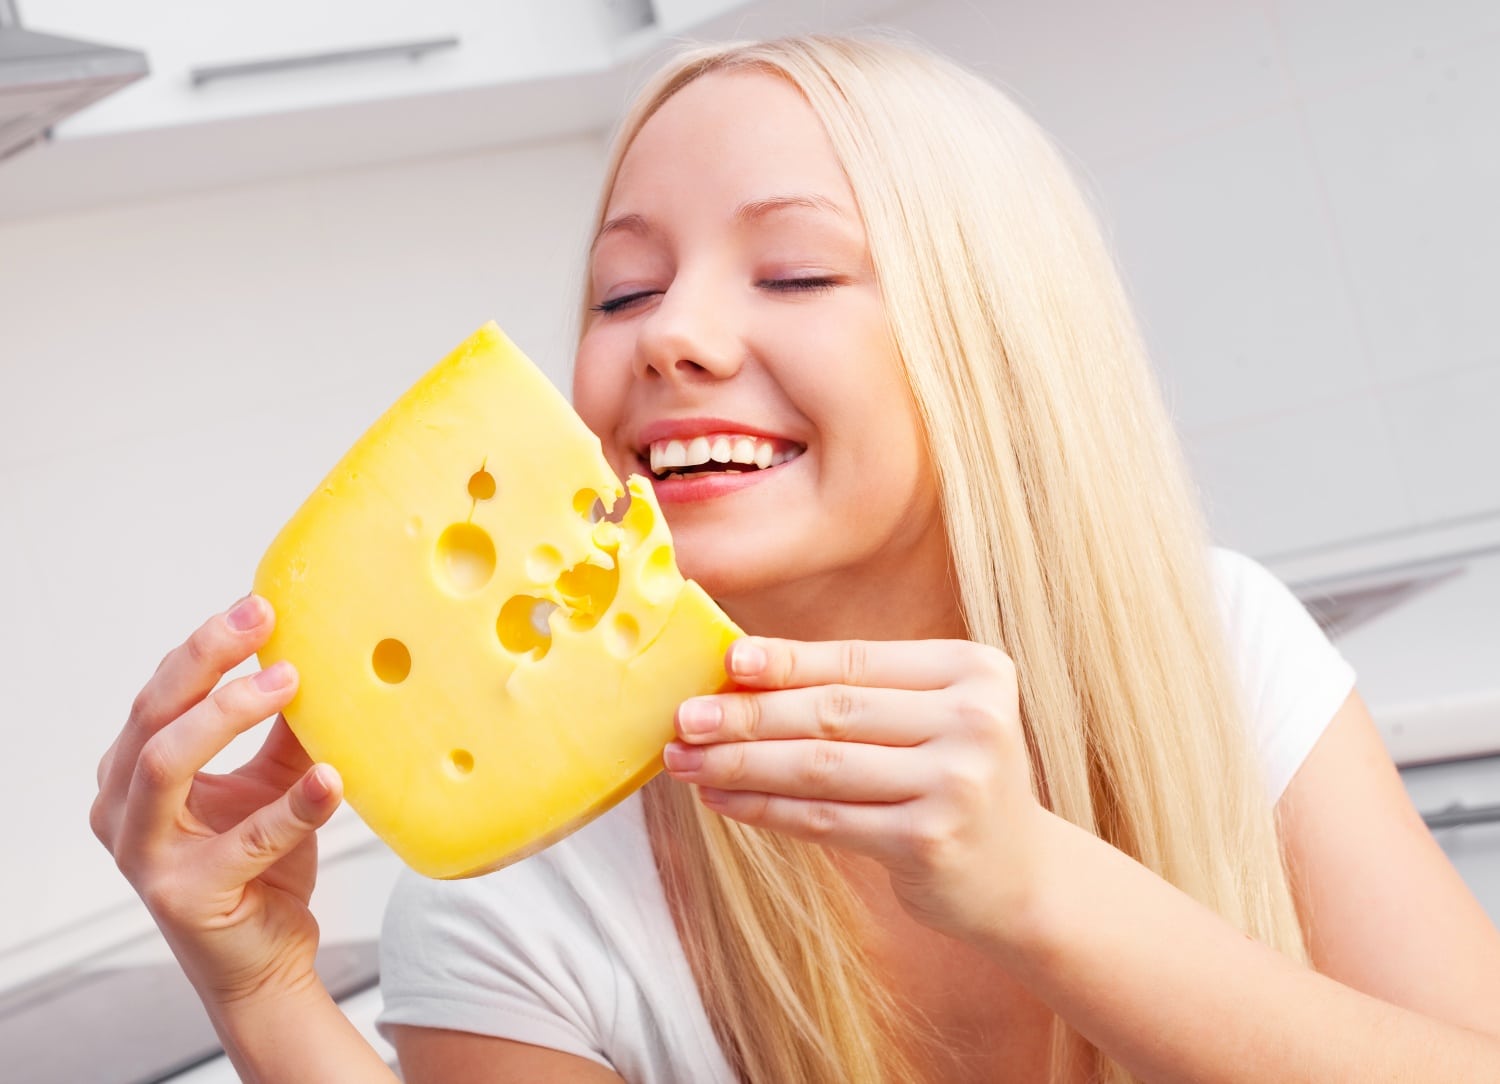 Fogfehérítő diéta: ebben még sajt is van!